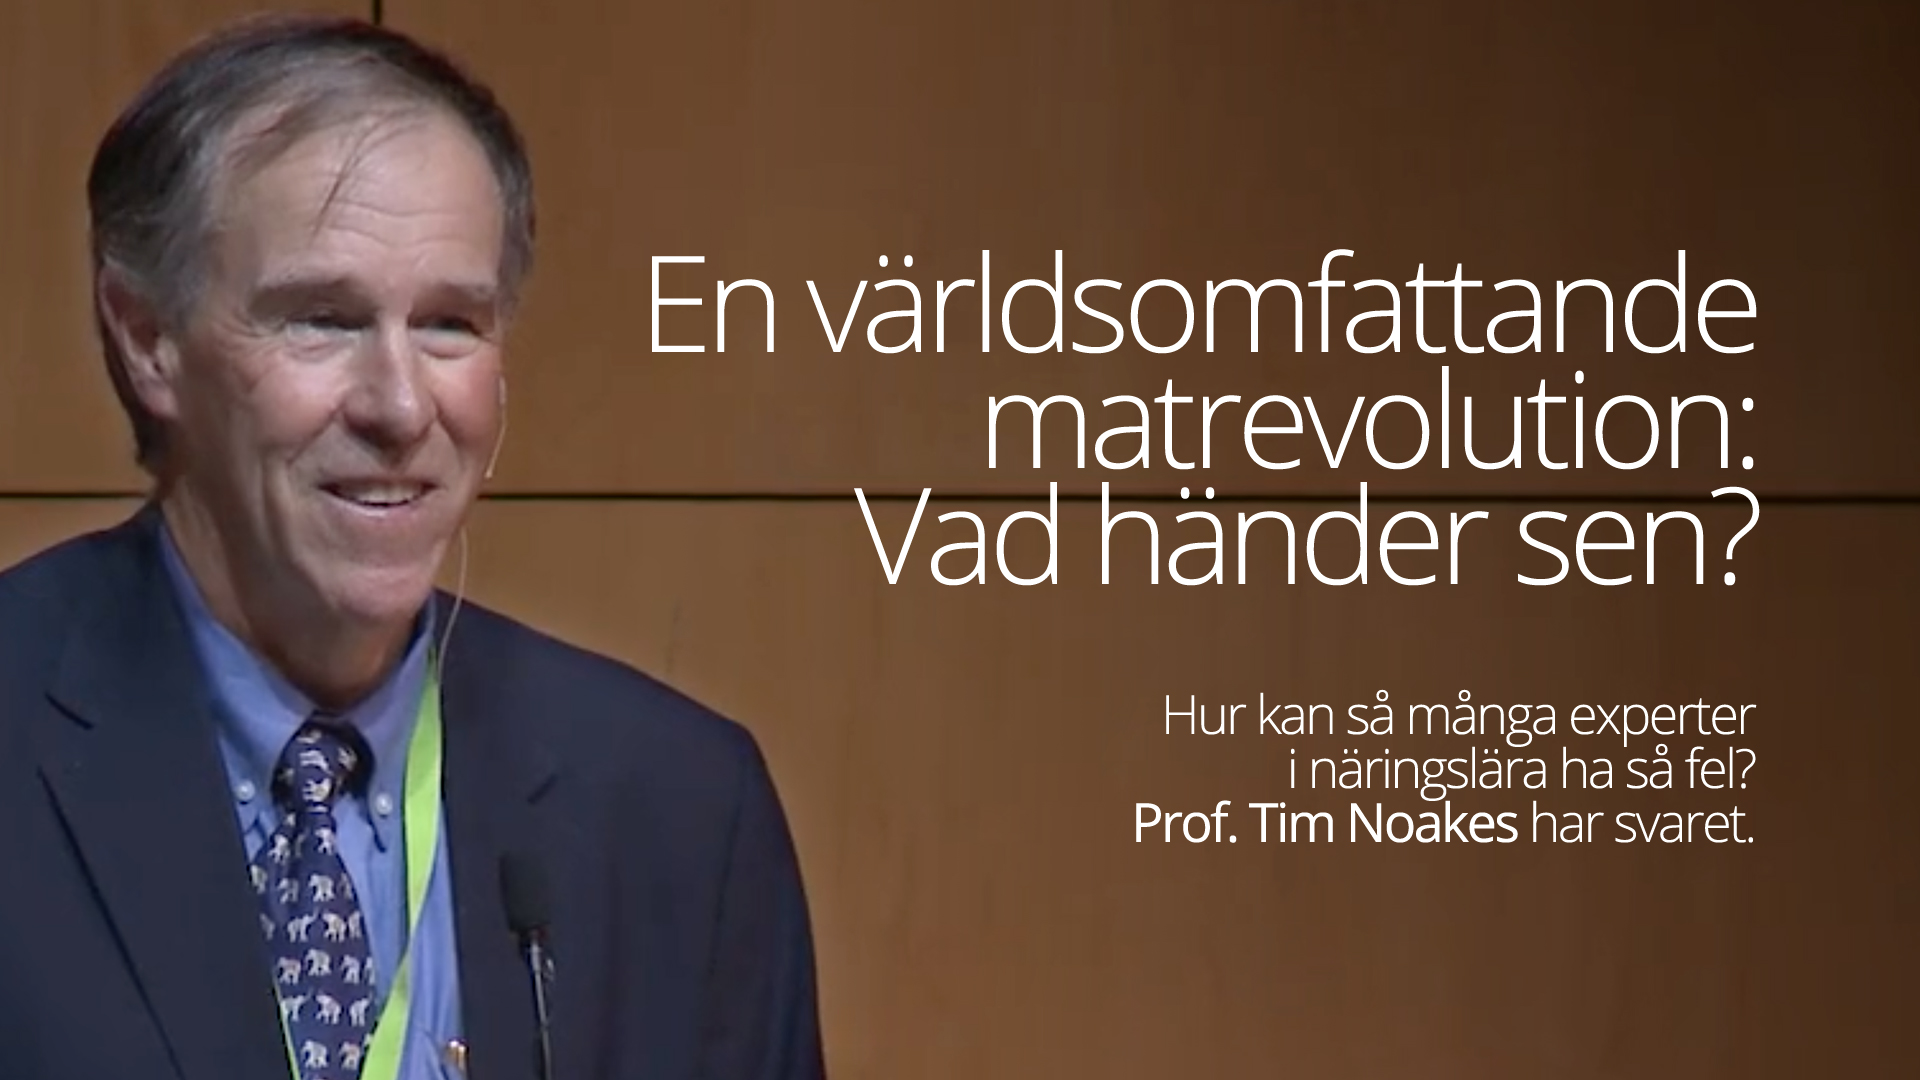 Bra intervju med professor Tim Noakes – att driva revolutionen framåt